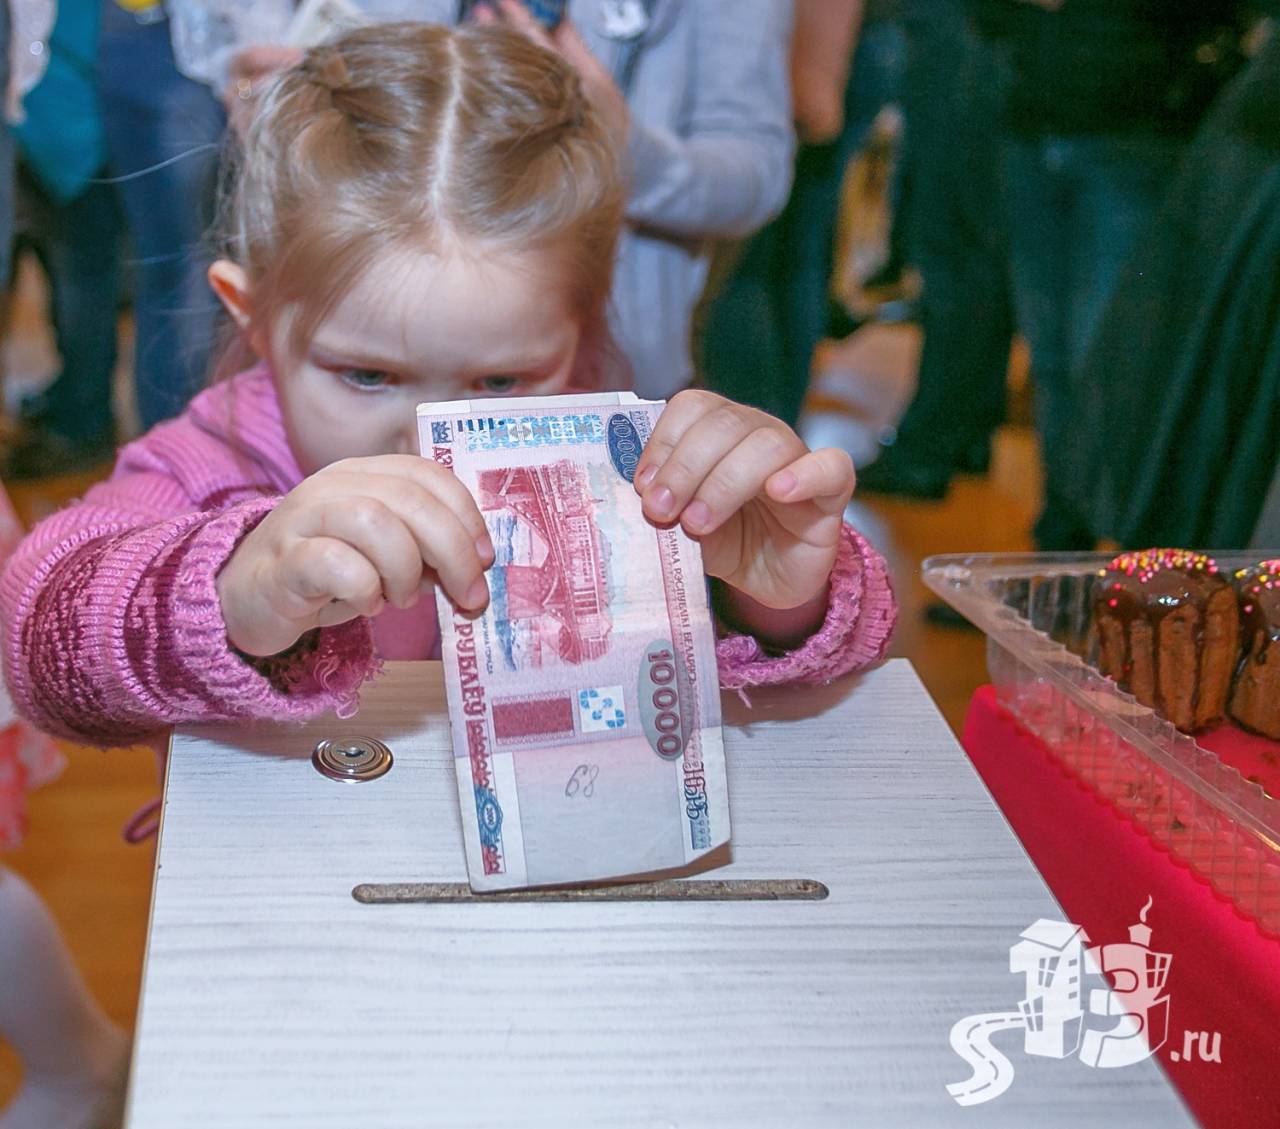 Фоторепортаж: в Гродно в ходе благотворительной ярмарки собрали 30 млн. рублей тяжелобольным детям